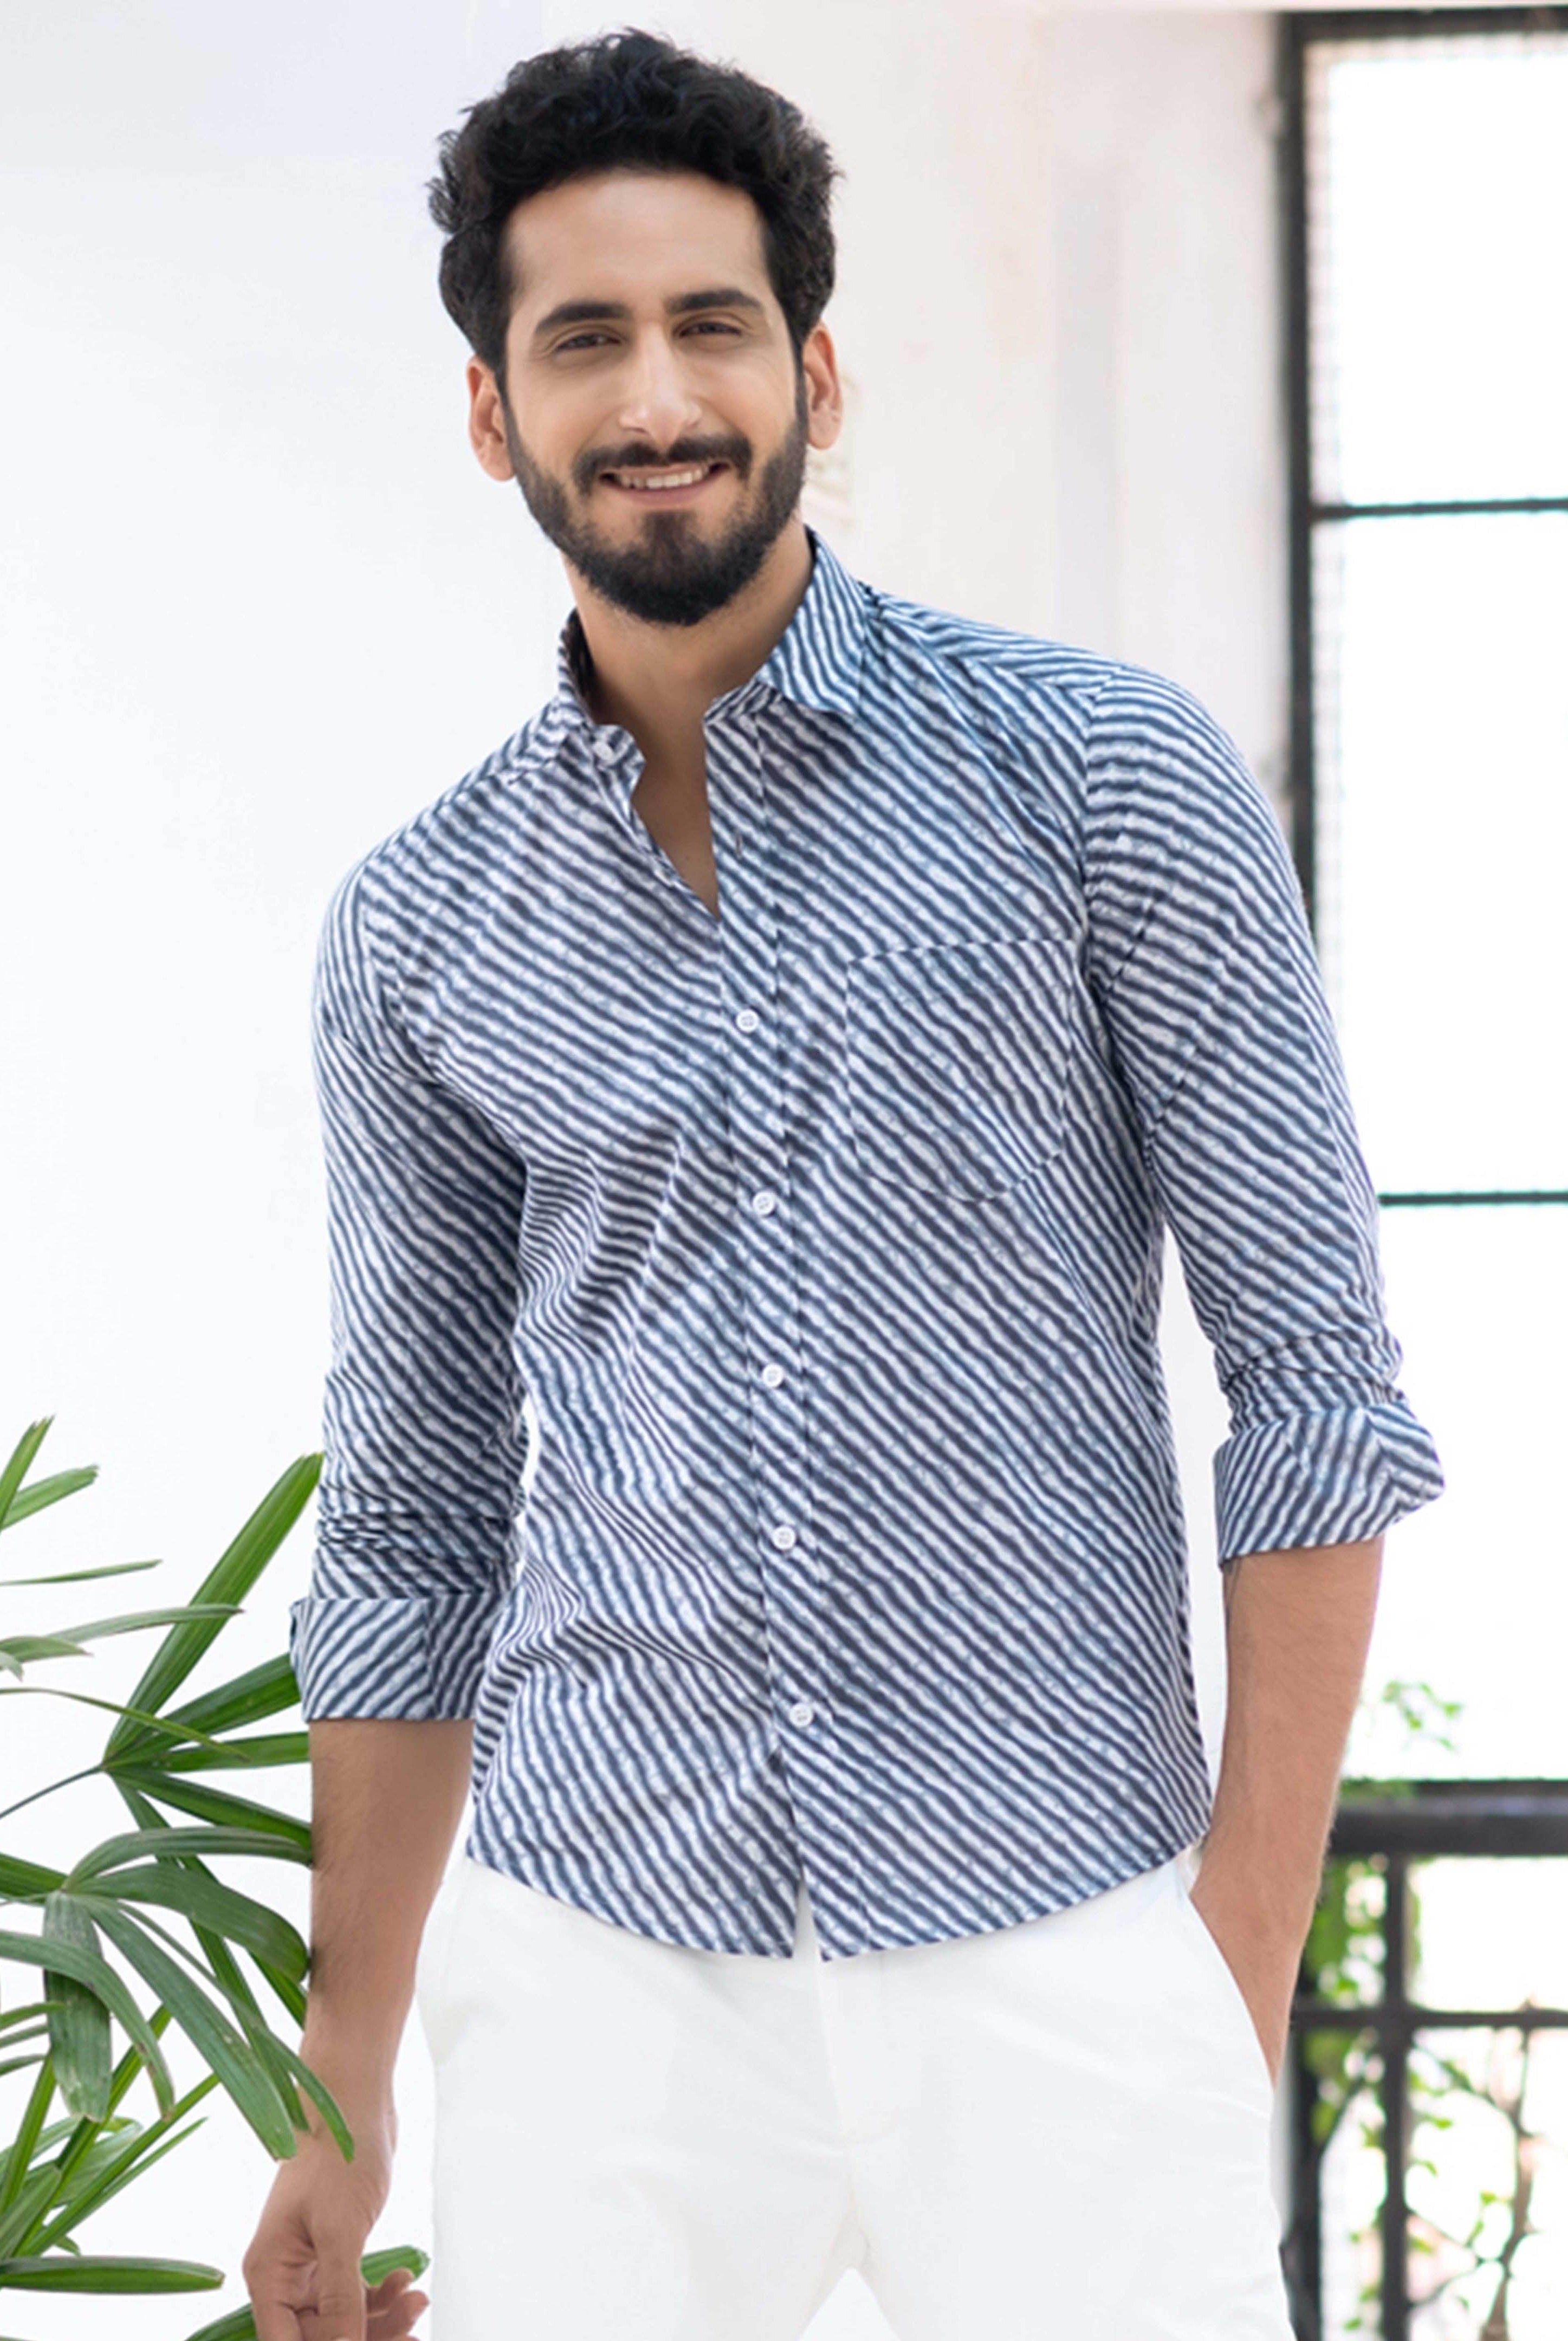 Grey Jaipuri Printed Cotton Shirt 